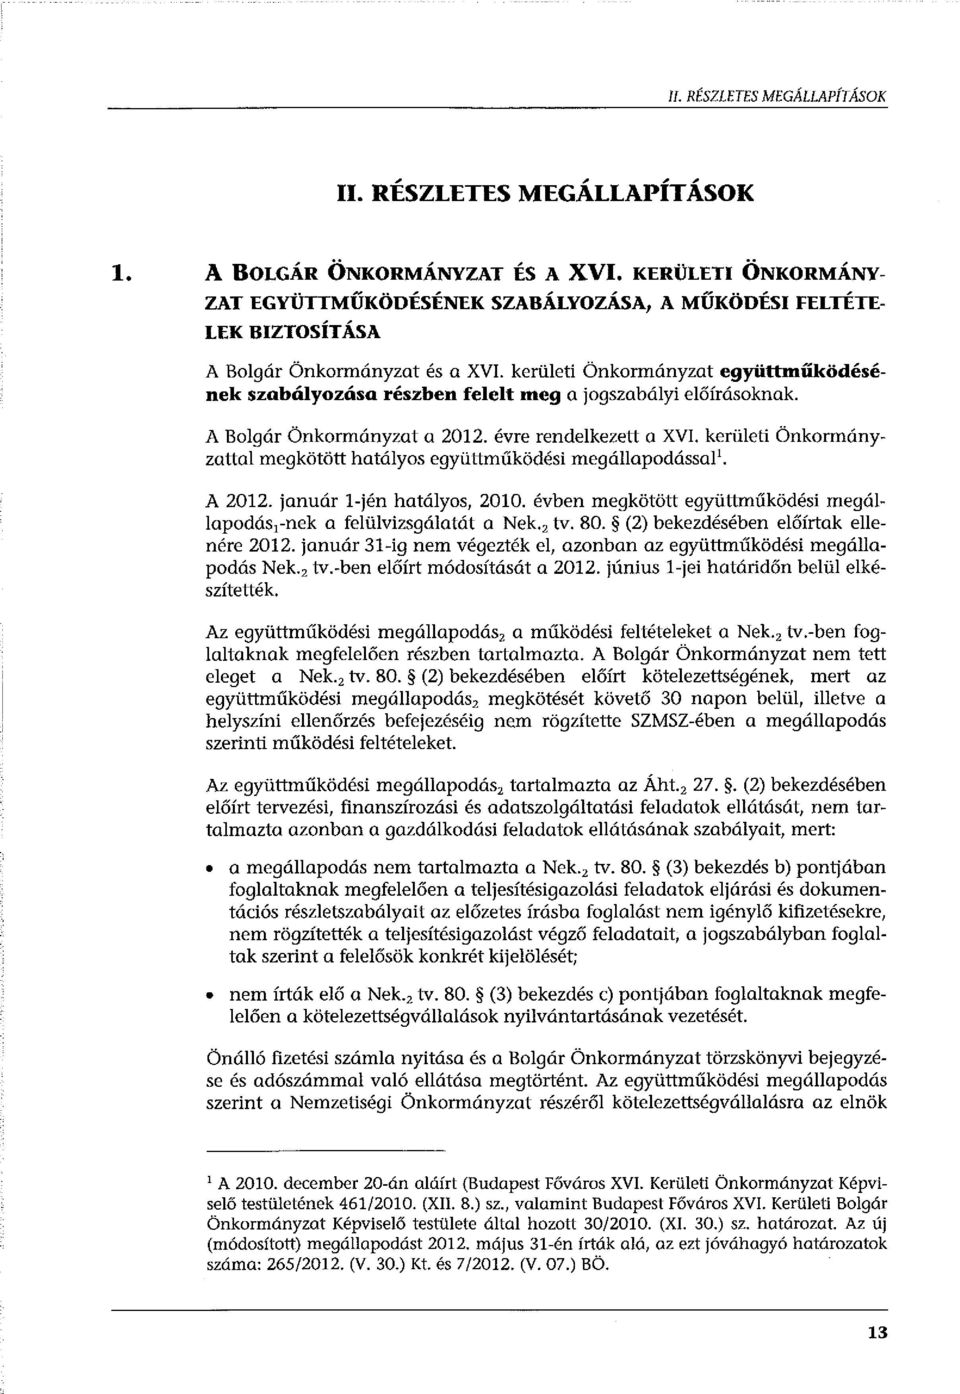 kerületi Önkormányzat együttműködésének szabályozása részben felelt meg a jogszabályi előírásoknak. A Bolgár Önkormányzat a 2012. évre rendelkezett a XVI.